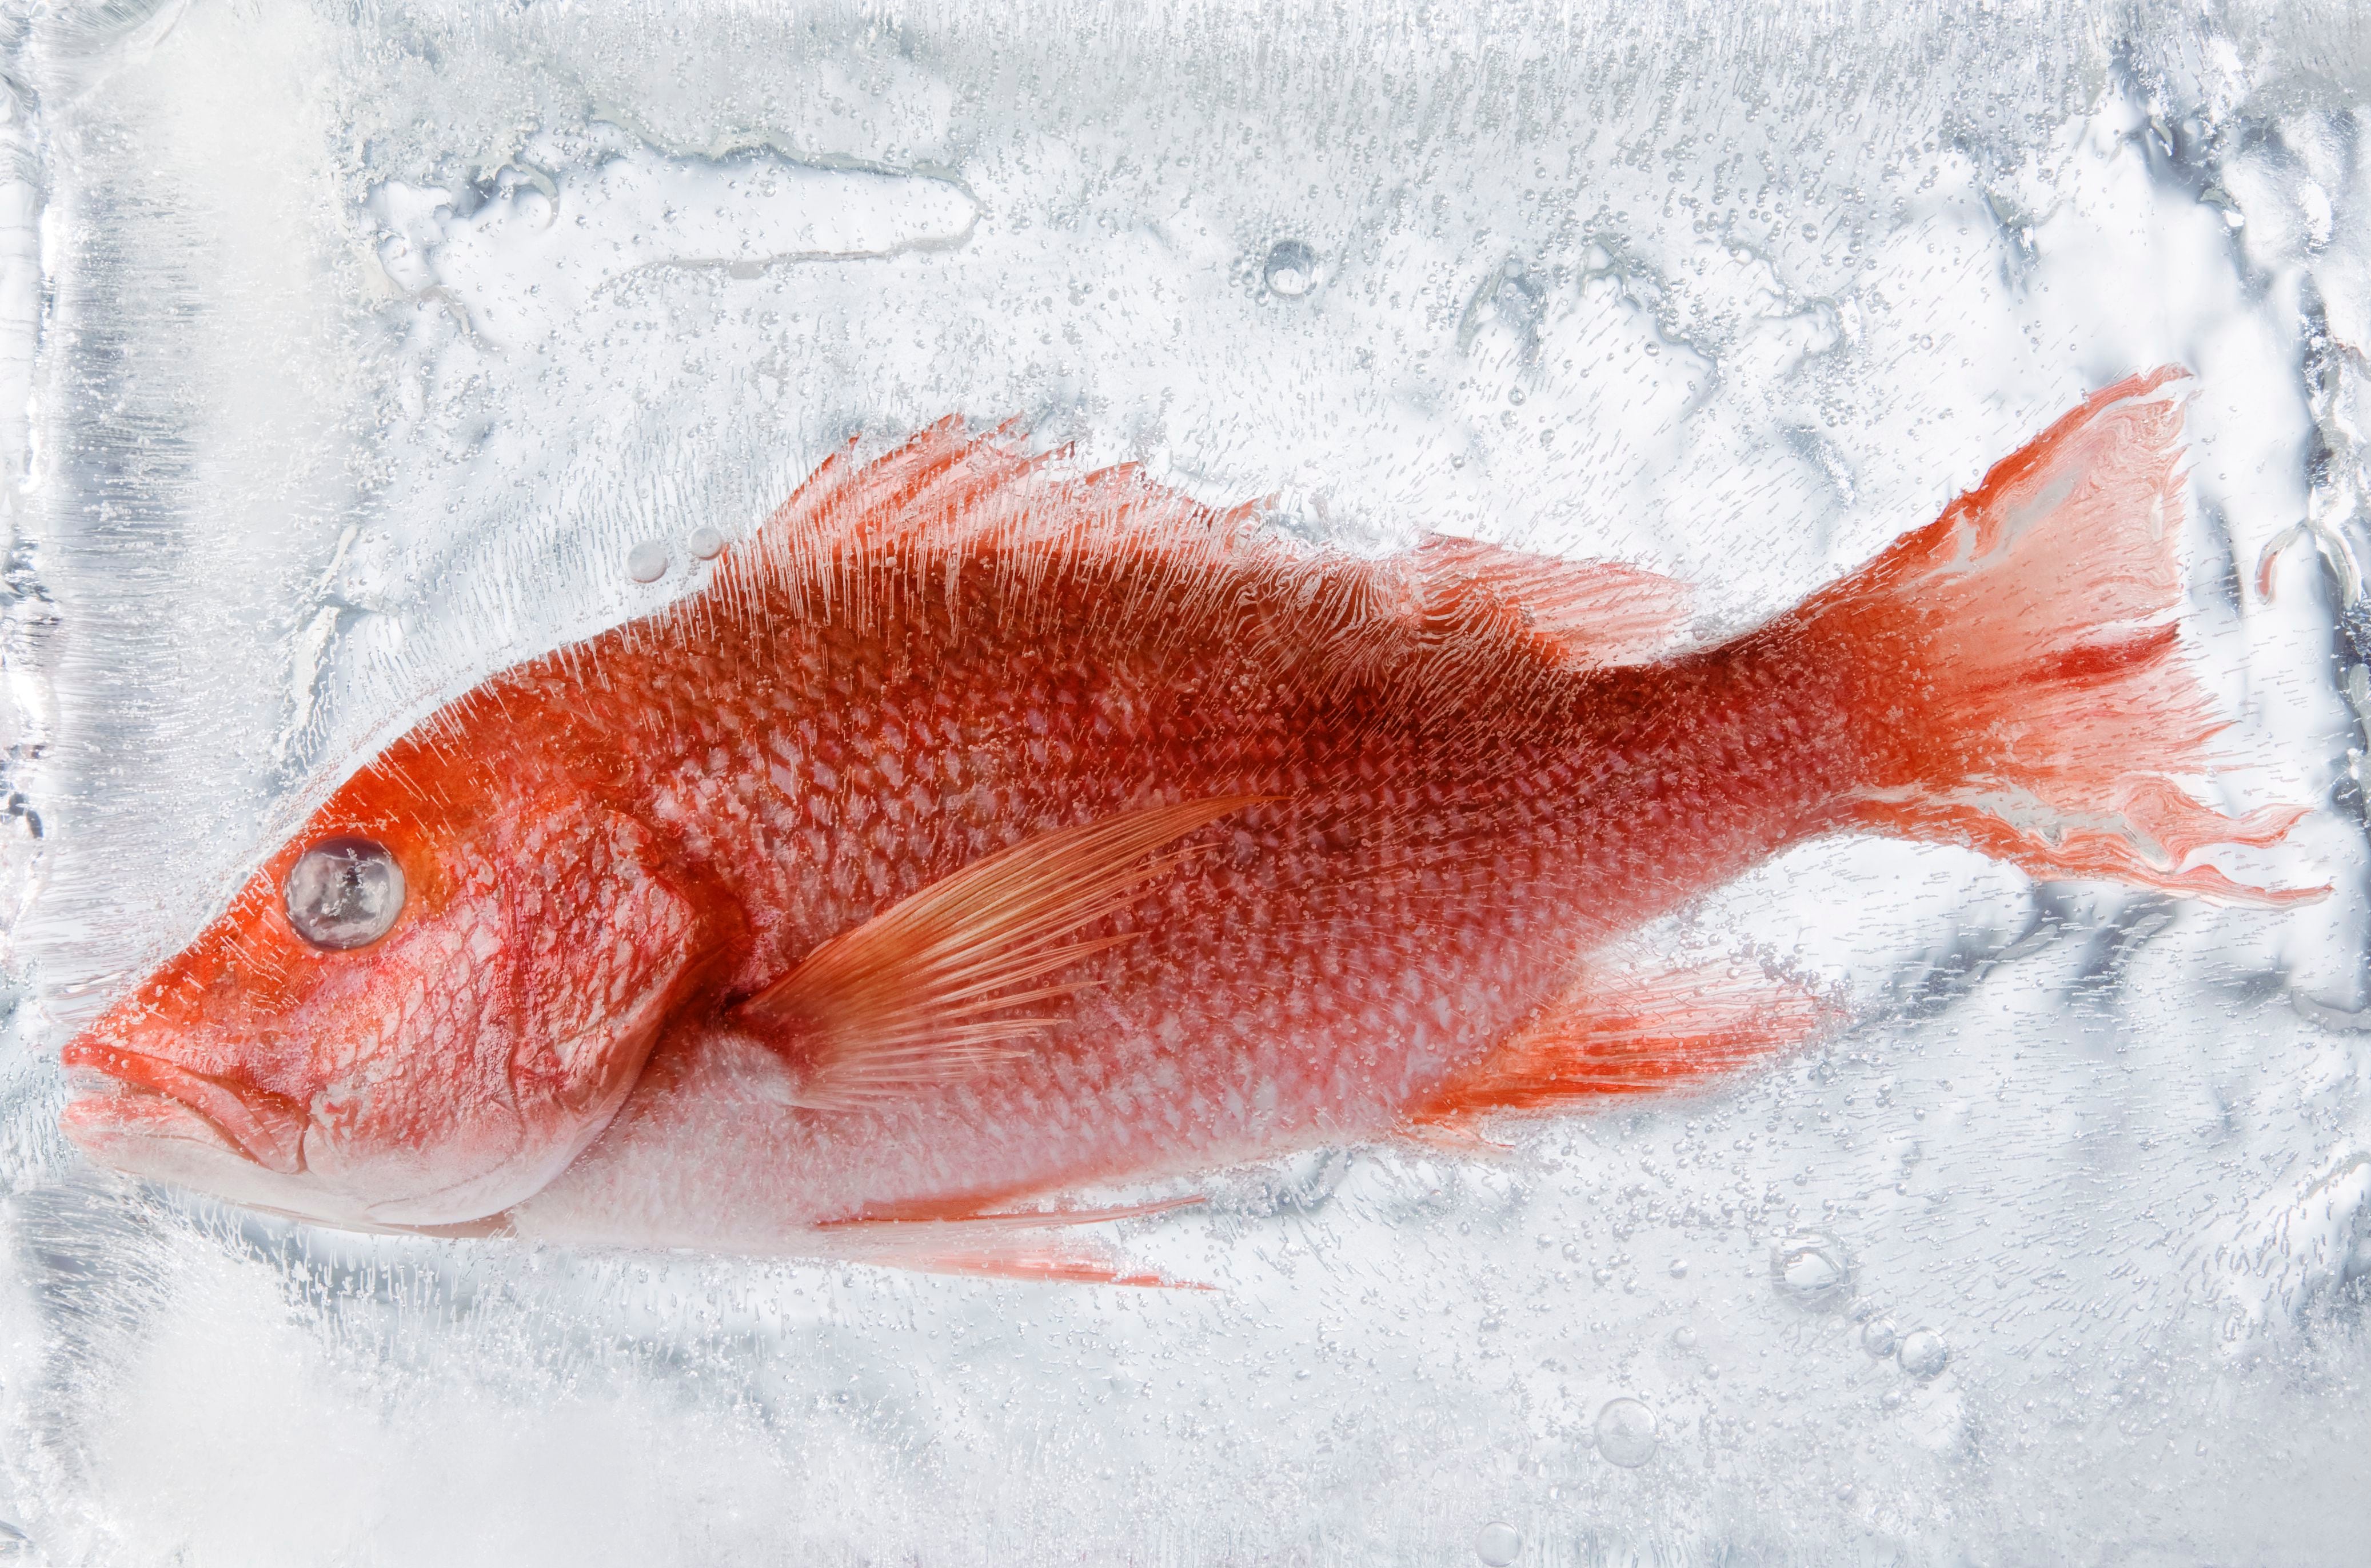 El tiempo de congelación del pescado fresco entre 5 y 7 días para